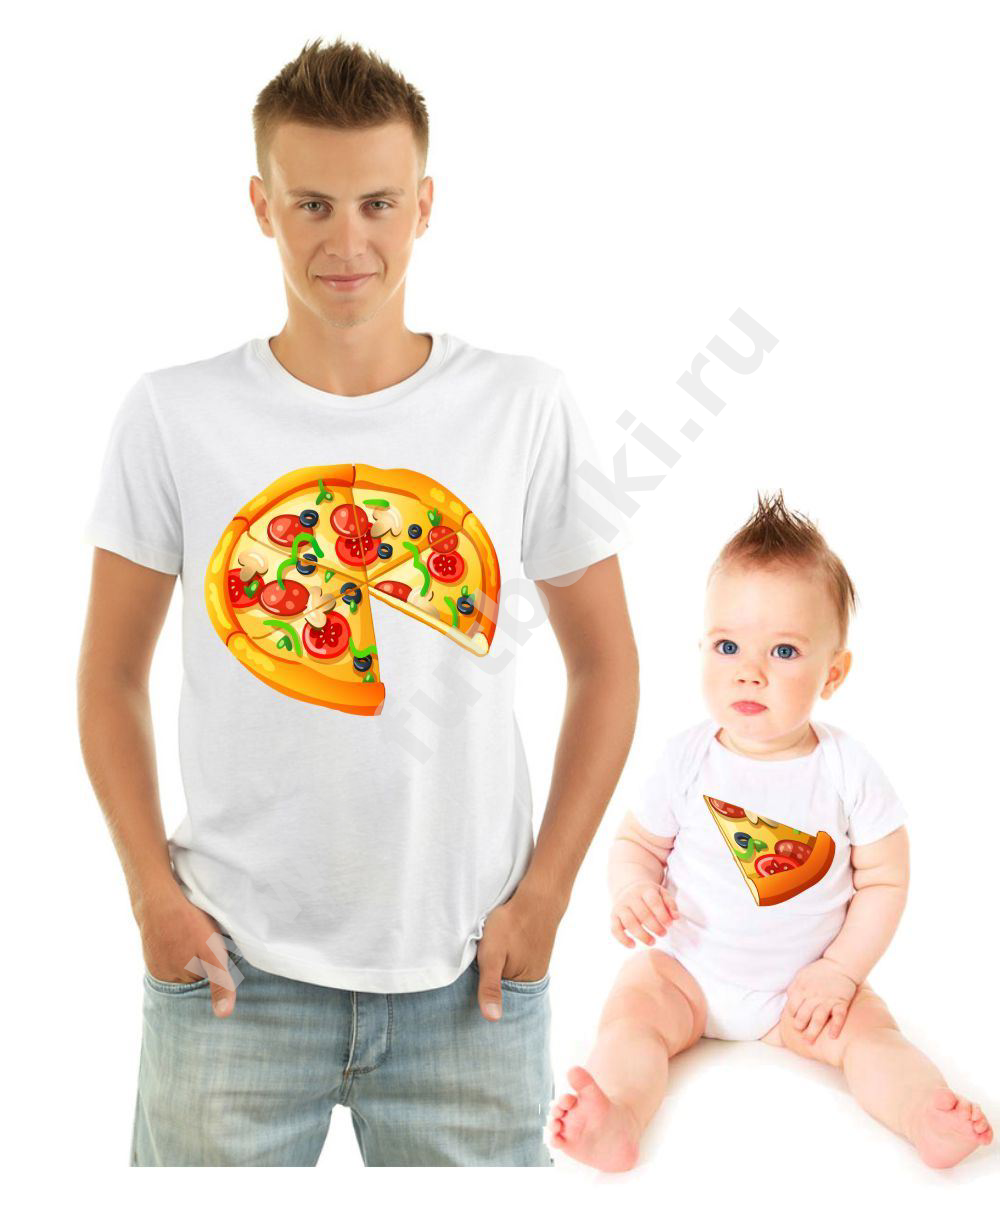 Отец майка. Футболки с пиццей для папы и ребенка. Футболки семейные с пиццей. Футболка с пиццей для папы и сына. Парные футболки пицца.